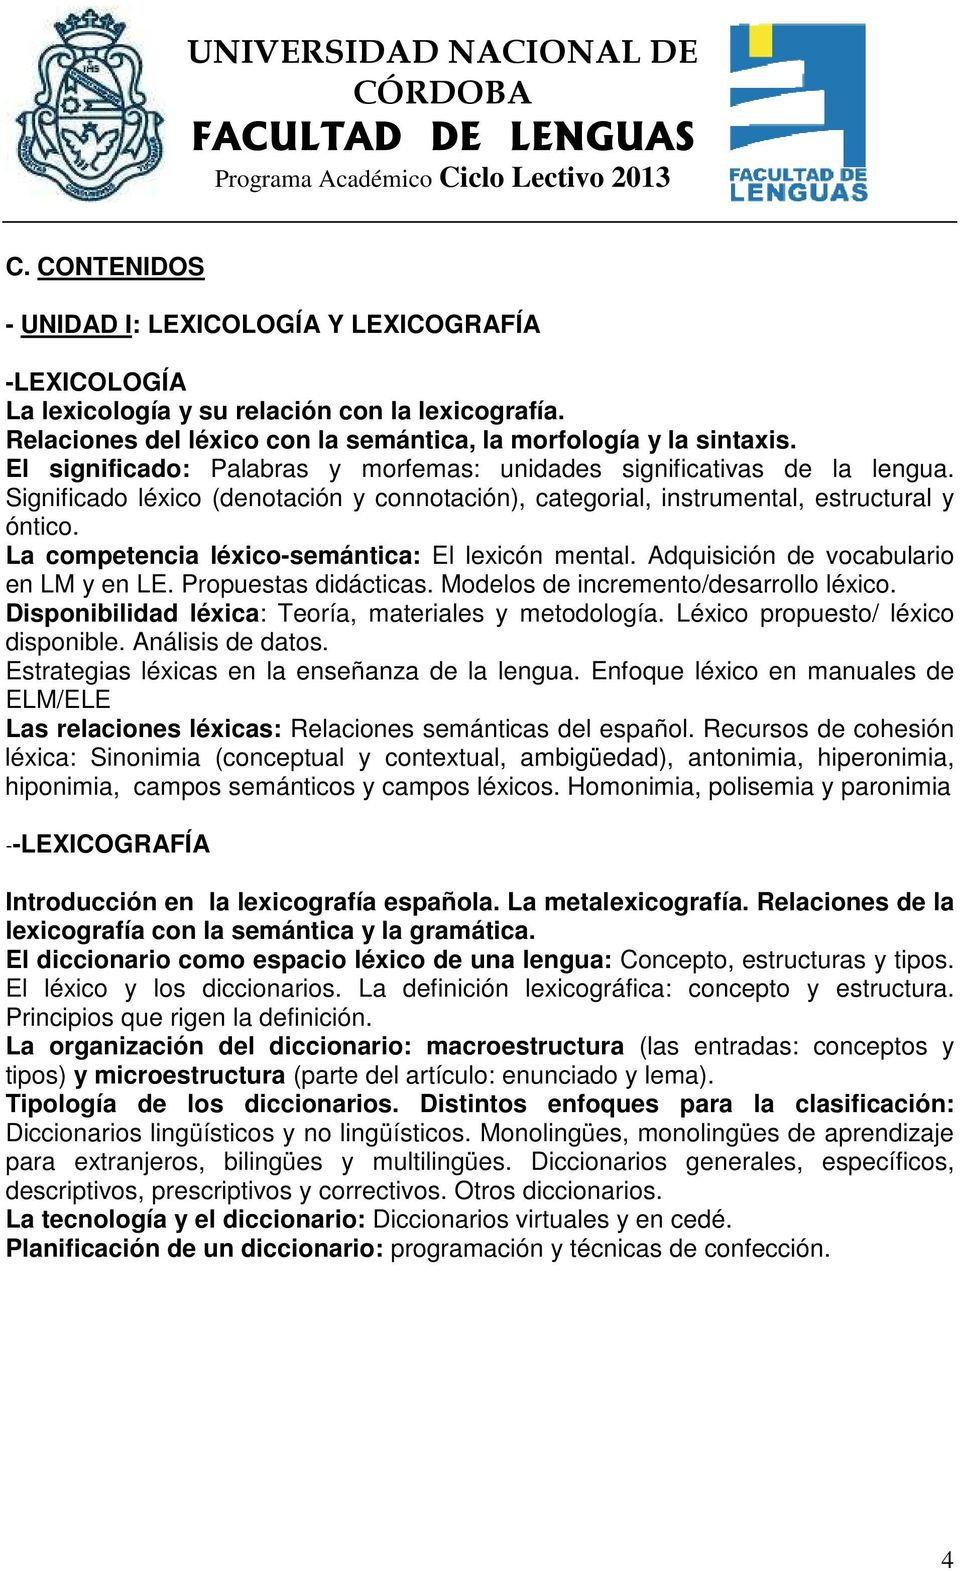 La competencia léxico-semántica: El lexicón mental. Adquisición de vocabulario en LM y en LE. Propuestas didácticas. Modelos de incremento/desarrollo léxico.